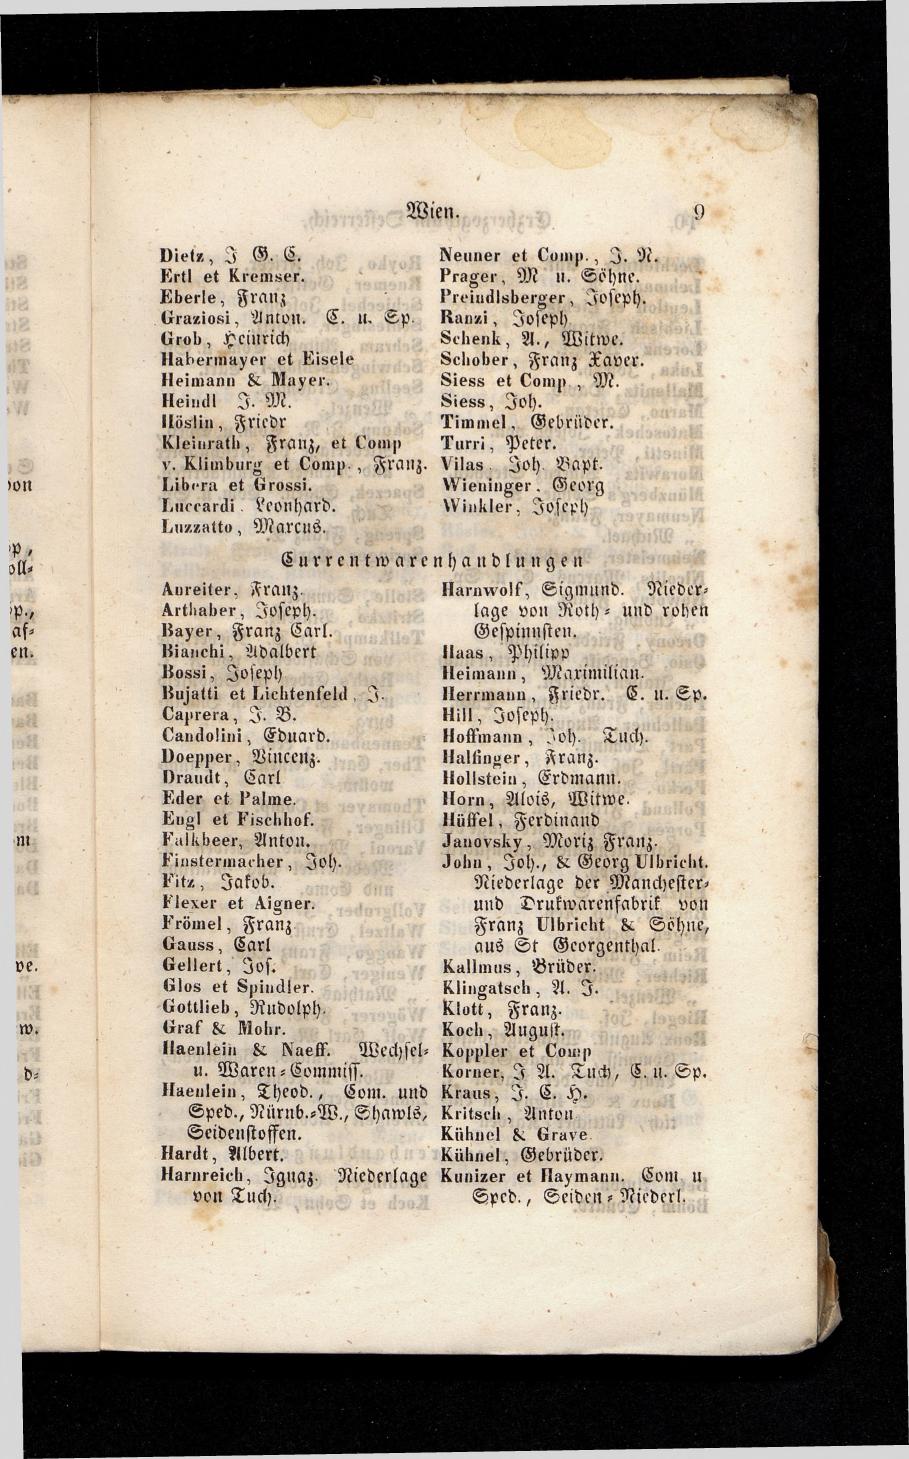 Grosses Adressbuch der Kaufleute. No. 13. Oesterreich ober u. unter der Enns 1844 - Seite 13